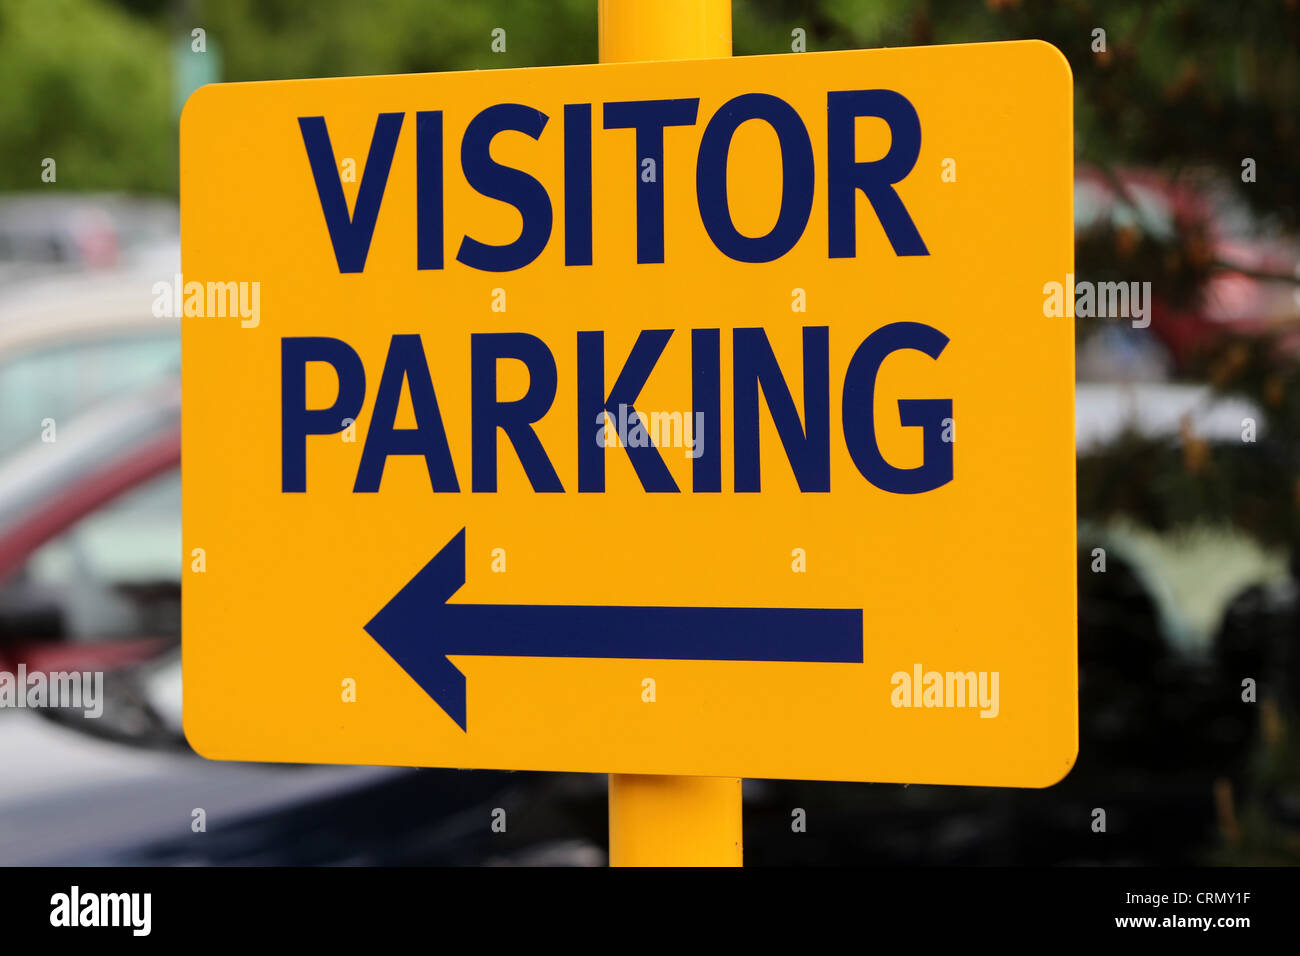 Visitor parking Banque de photographies et d'images à haute résolution -  Alamy